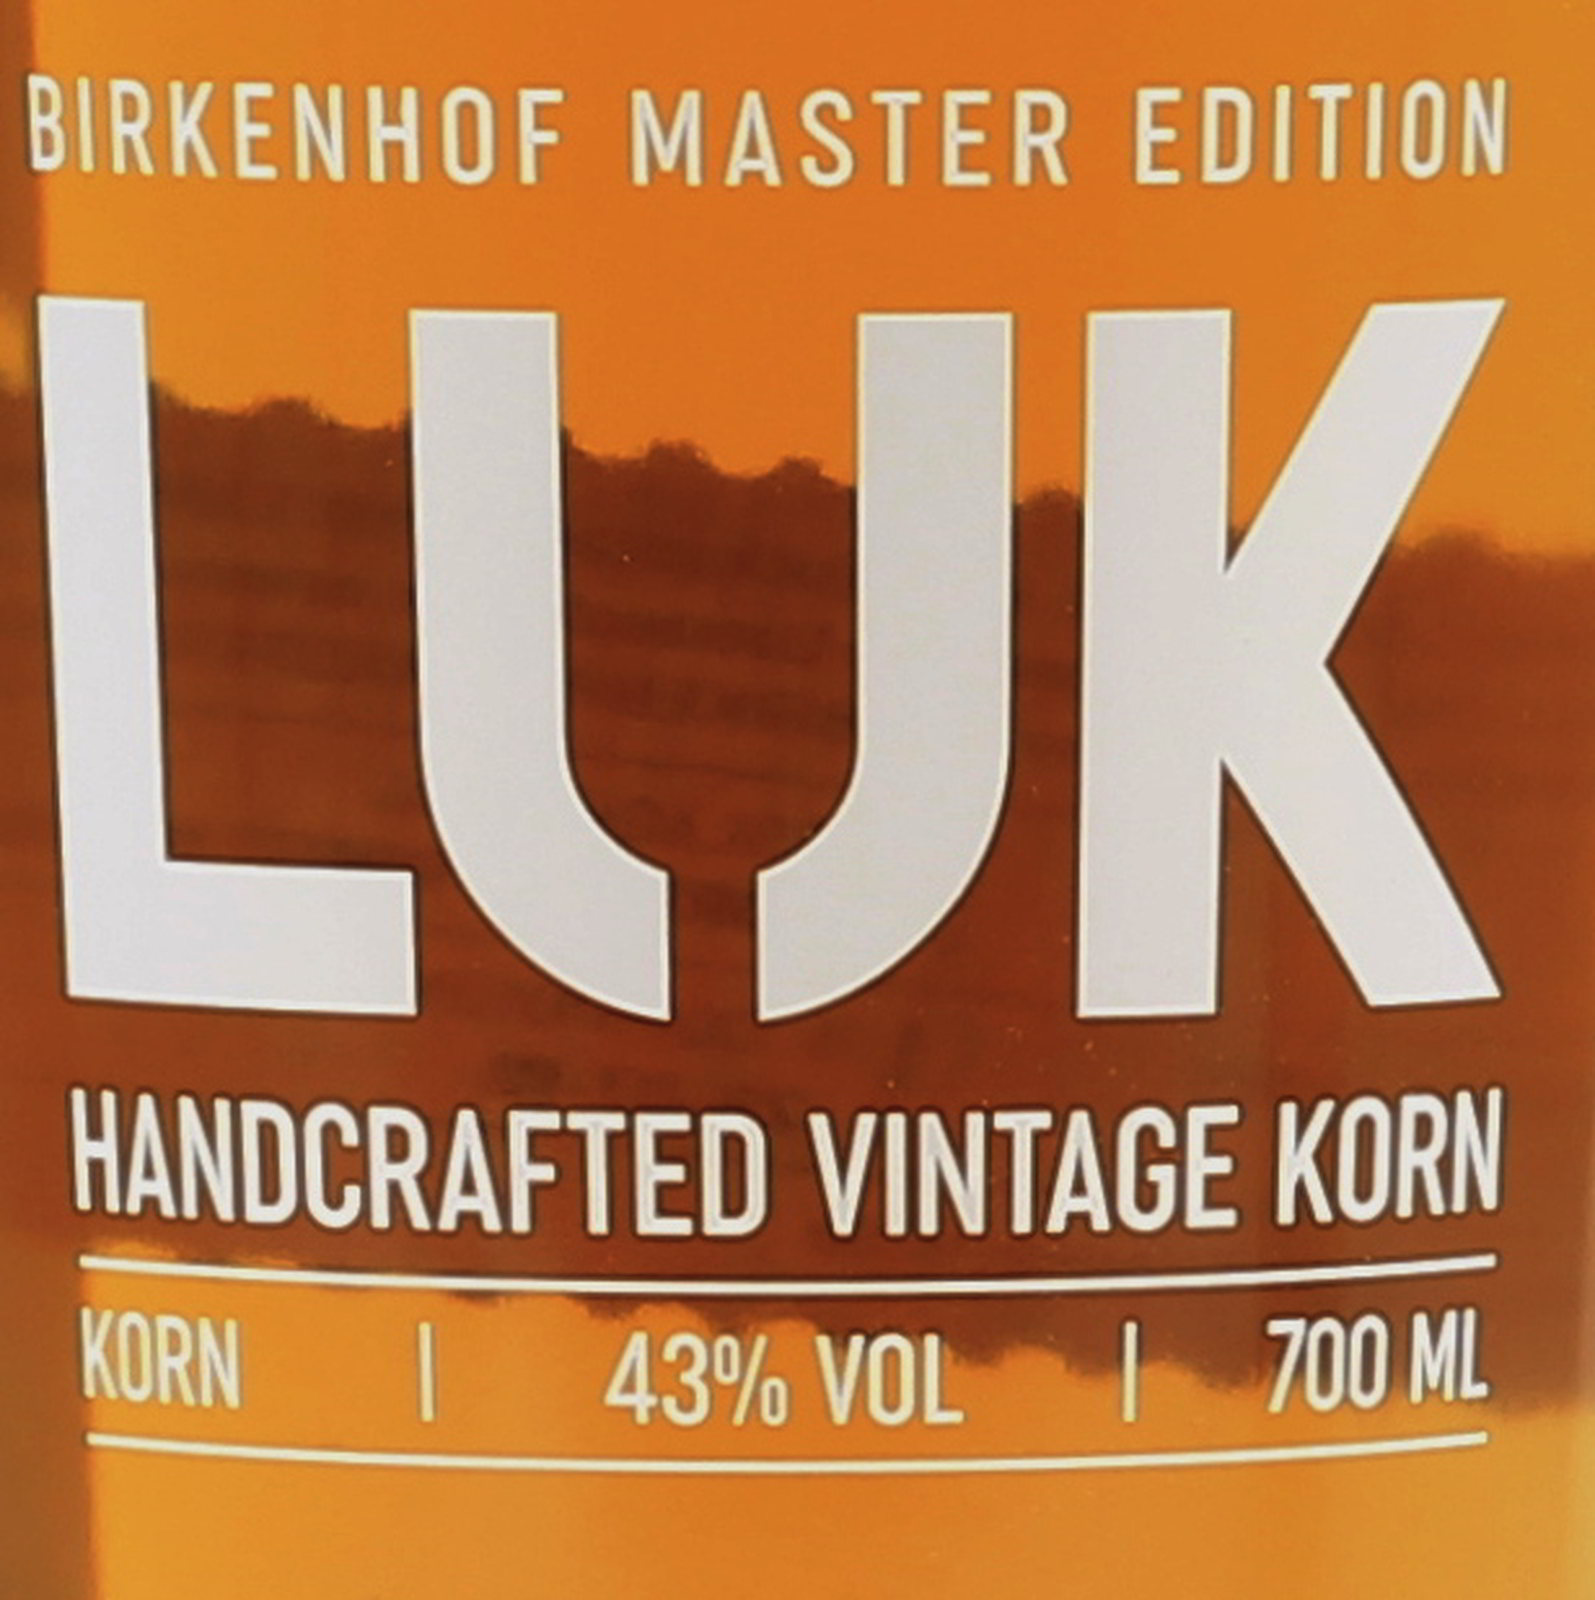 Birkenhof LUK exquisit Korn, Handcrafted Vintage